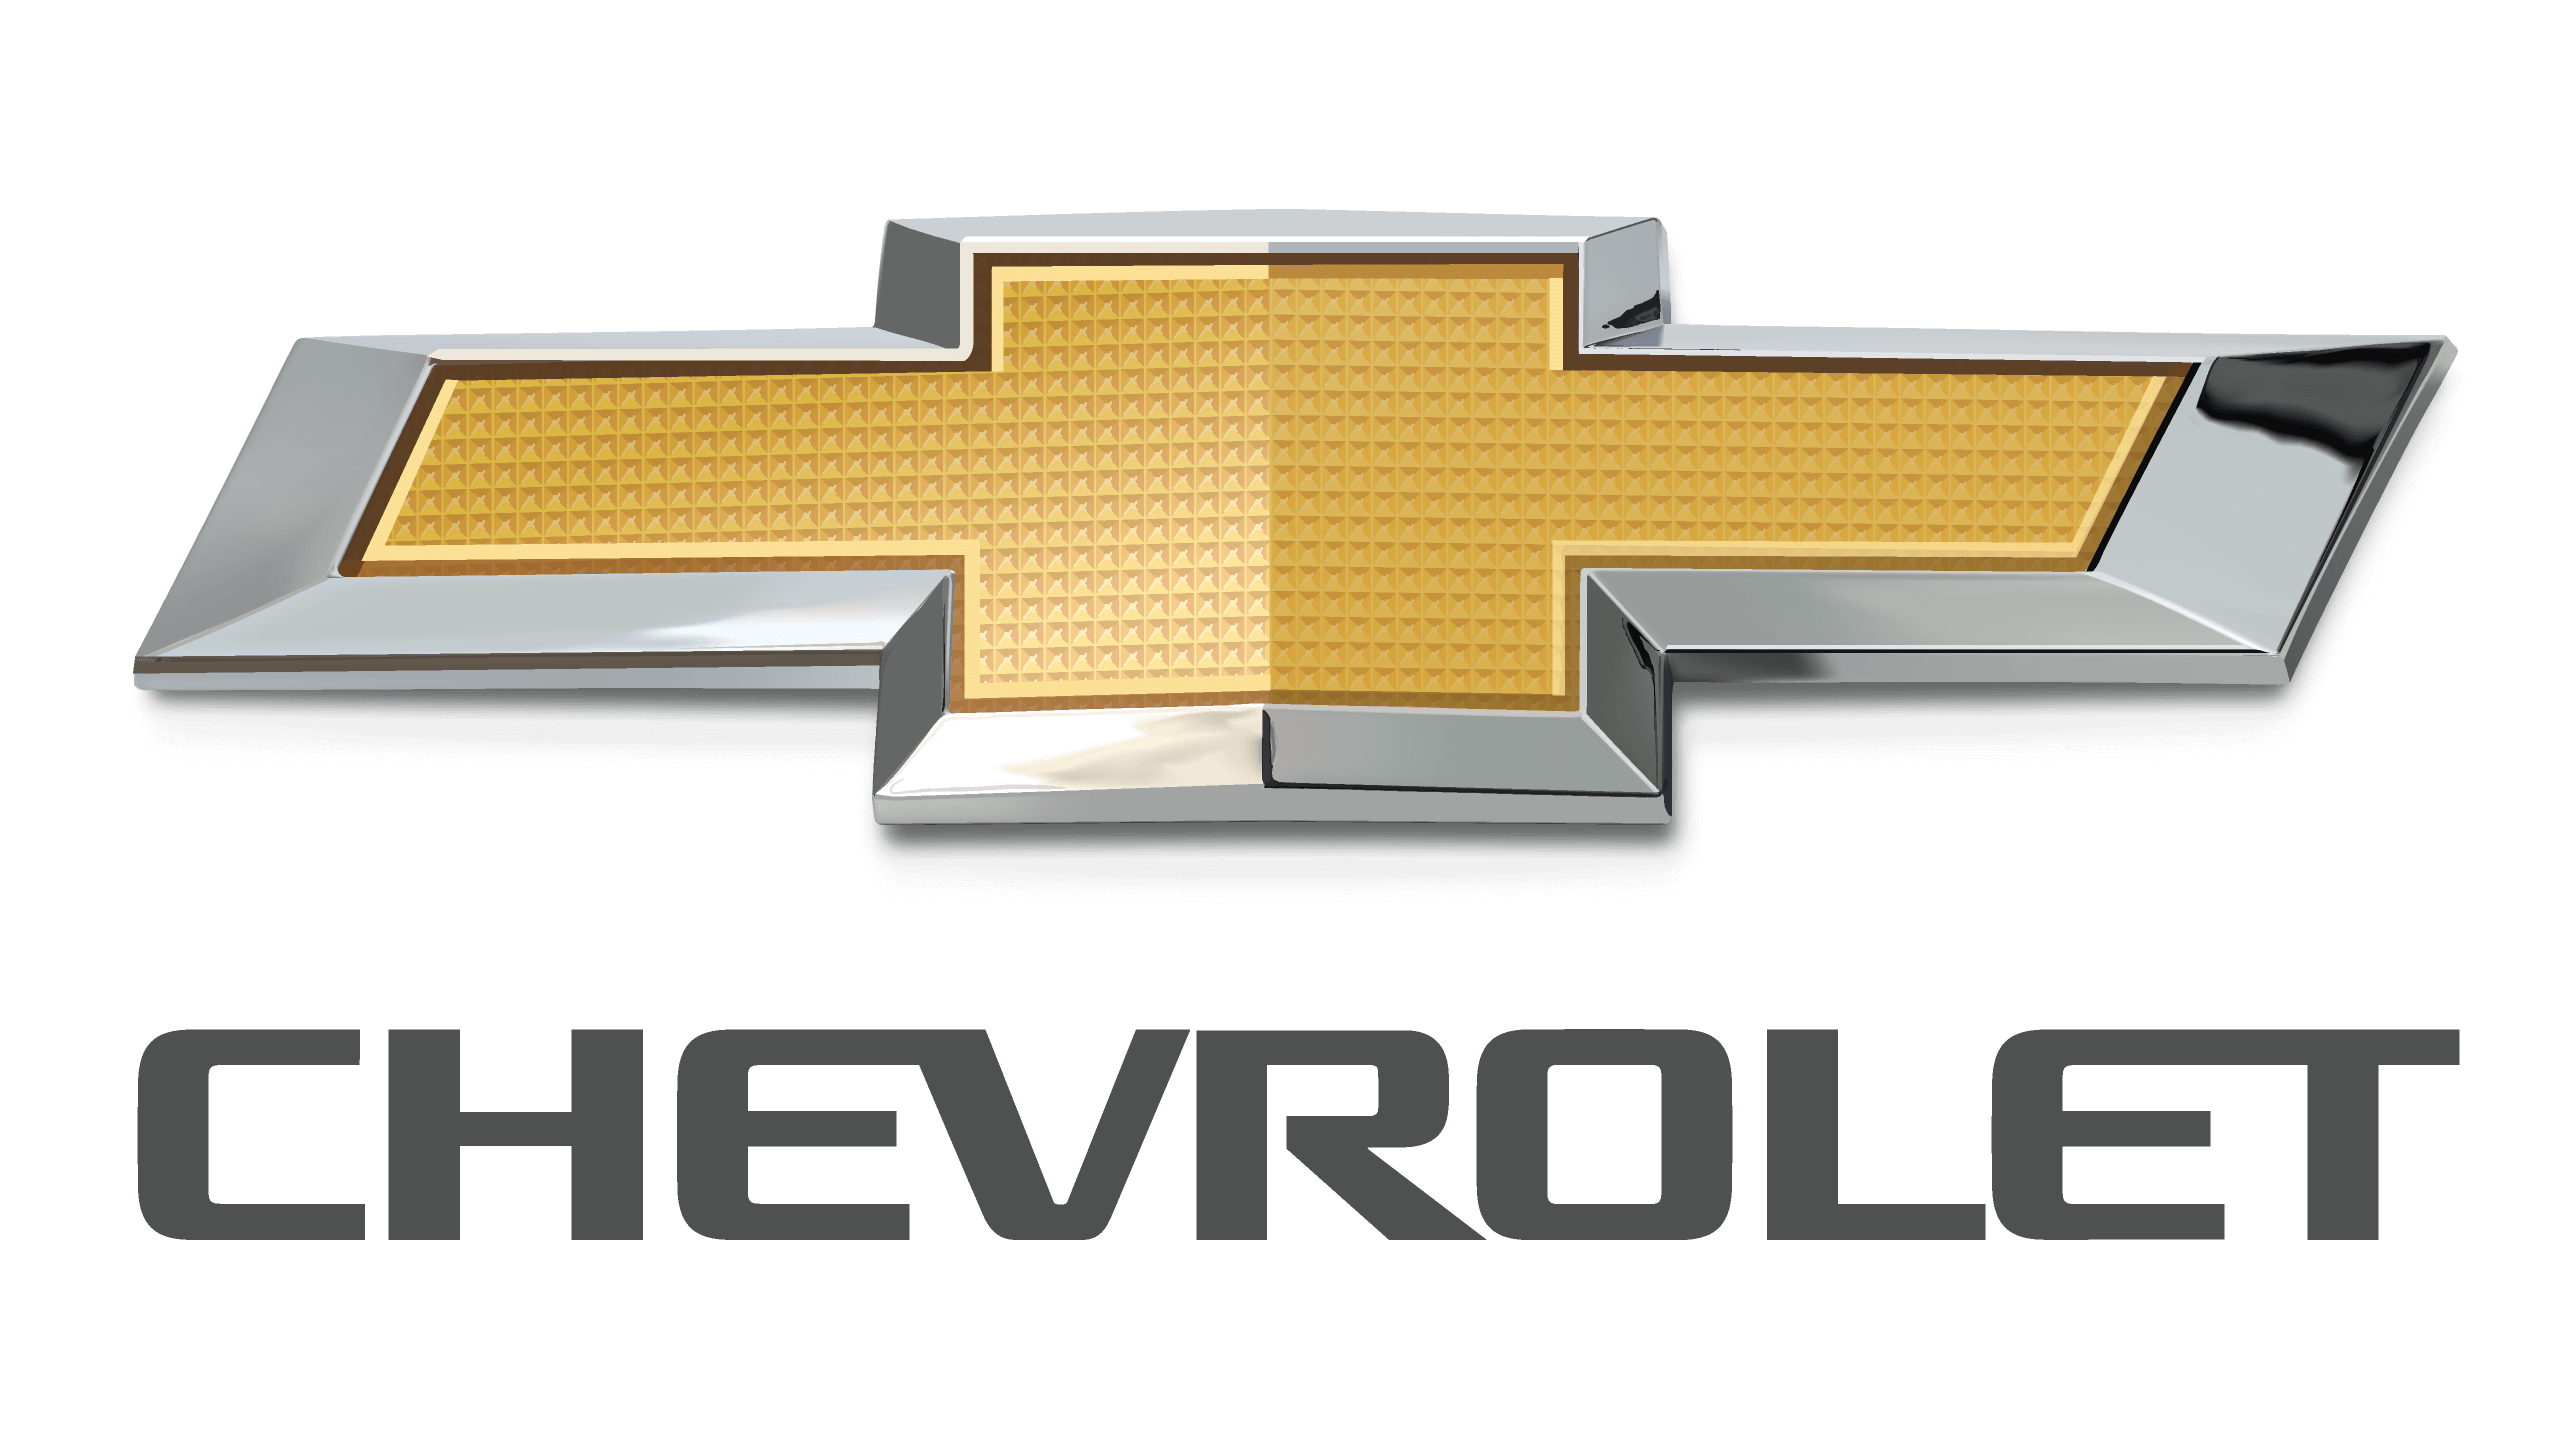 2021-2022 Chevrolet Tahoe, 2019-2022 Sierra 1500 and Silverado 1500, and 2020-2022 Silverado 2500HD, 3500HD